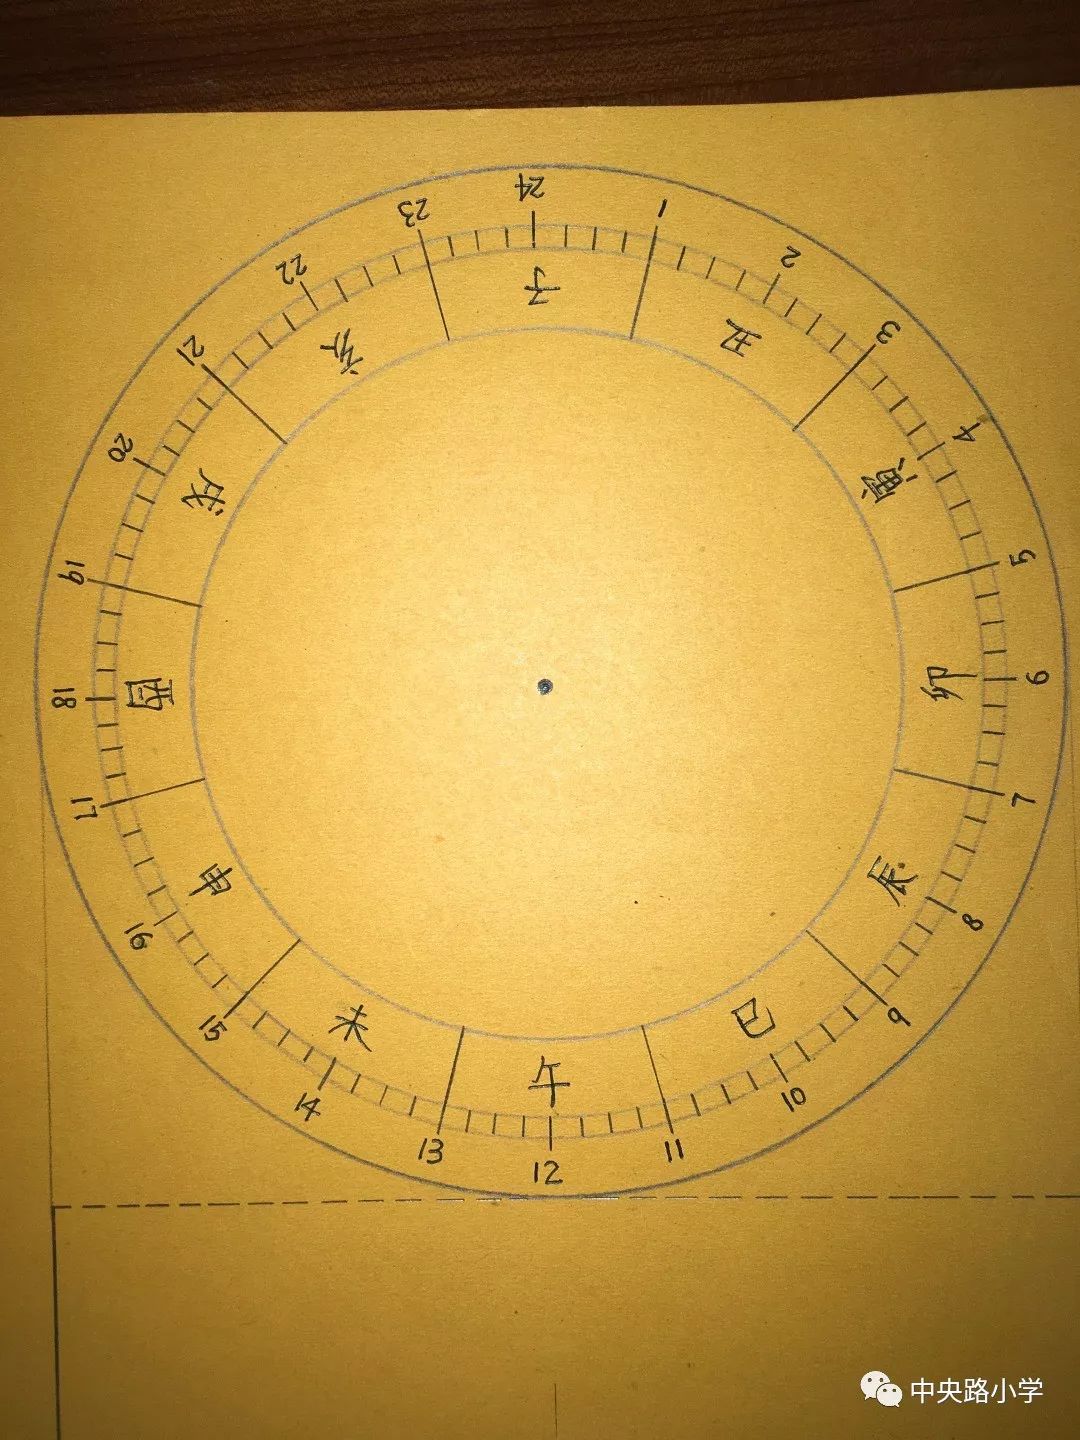 日晷的角度图片